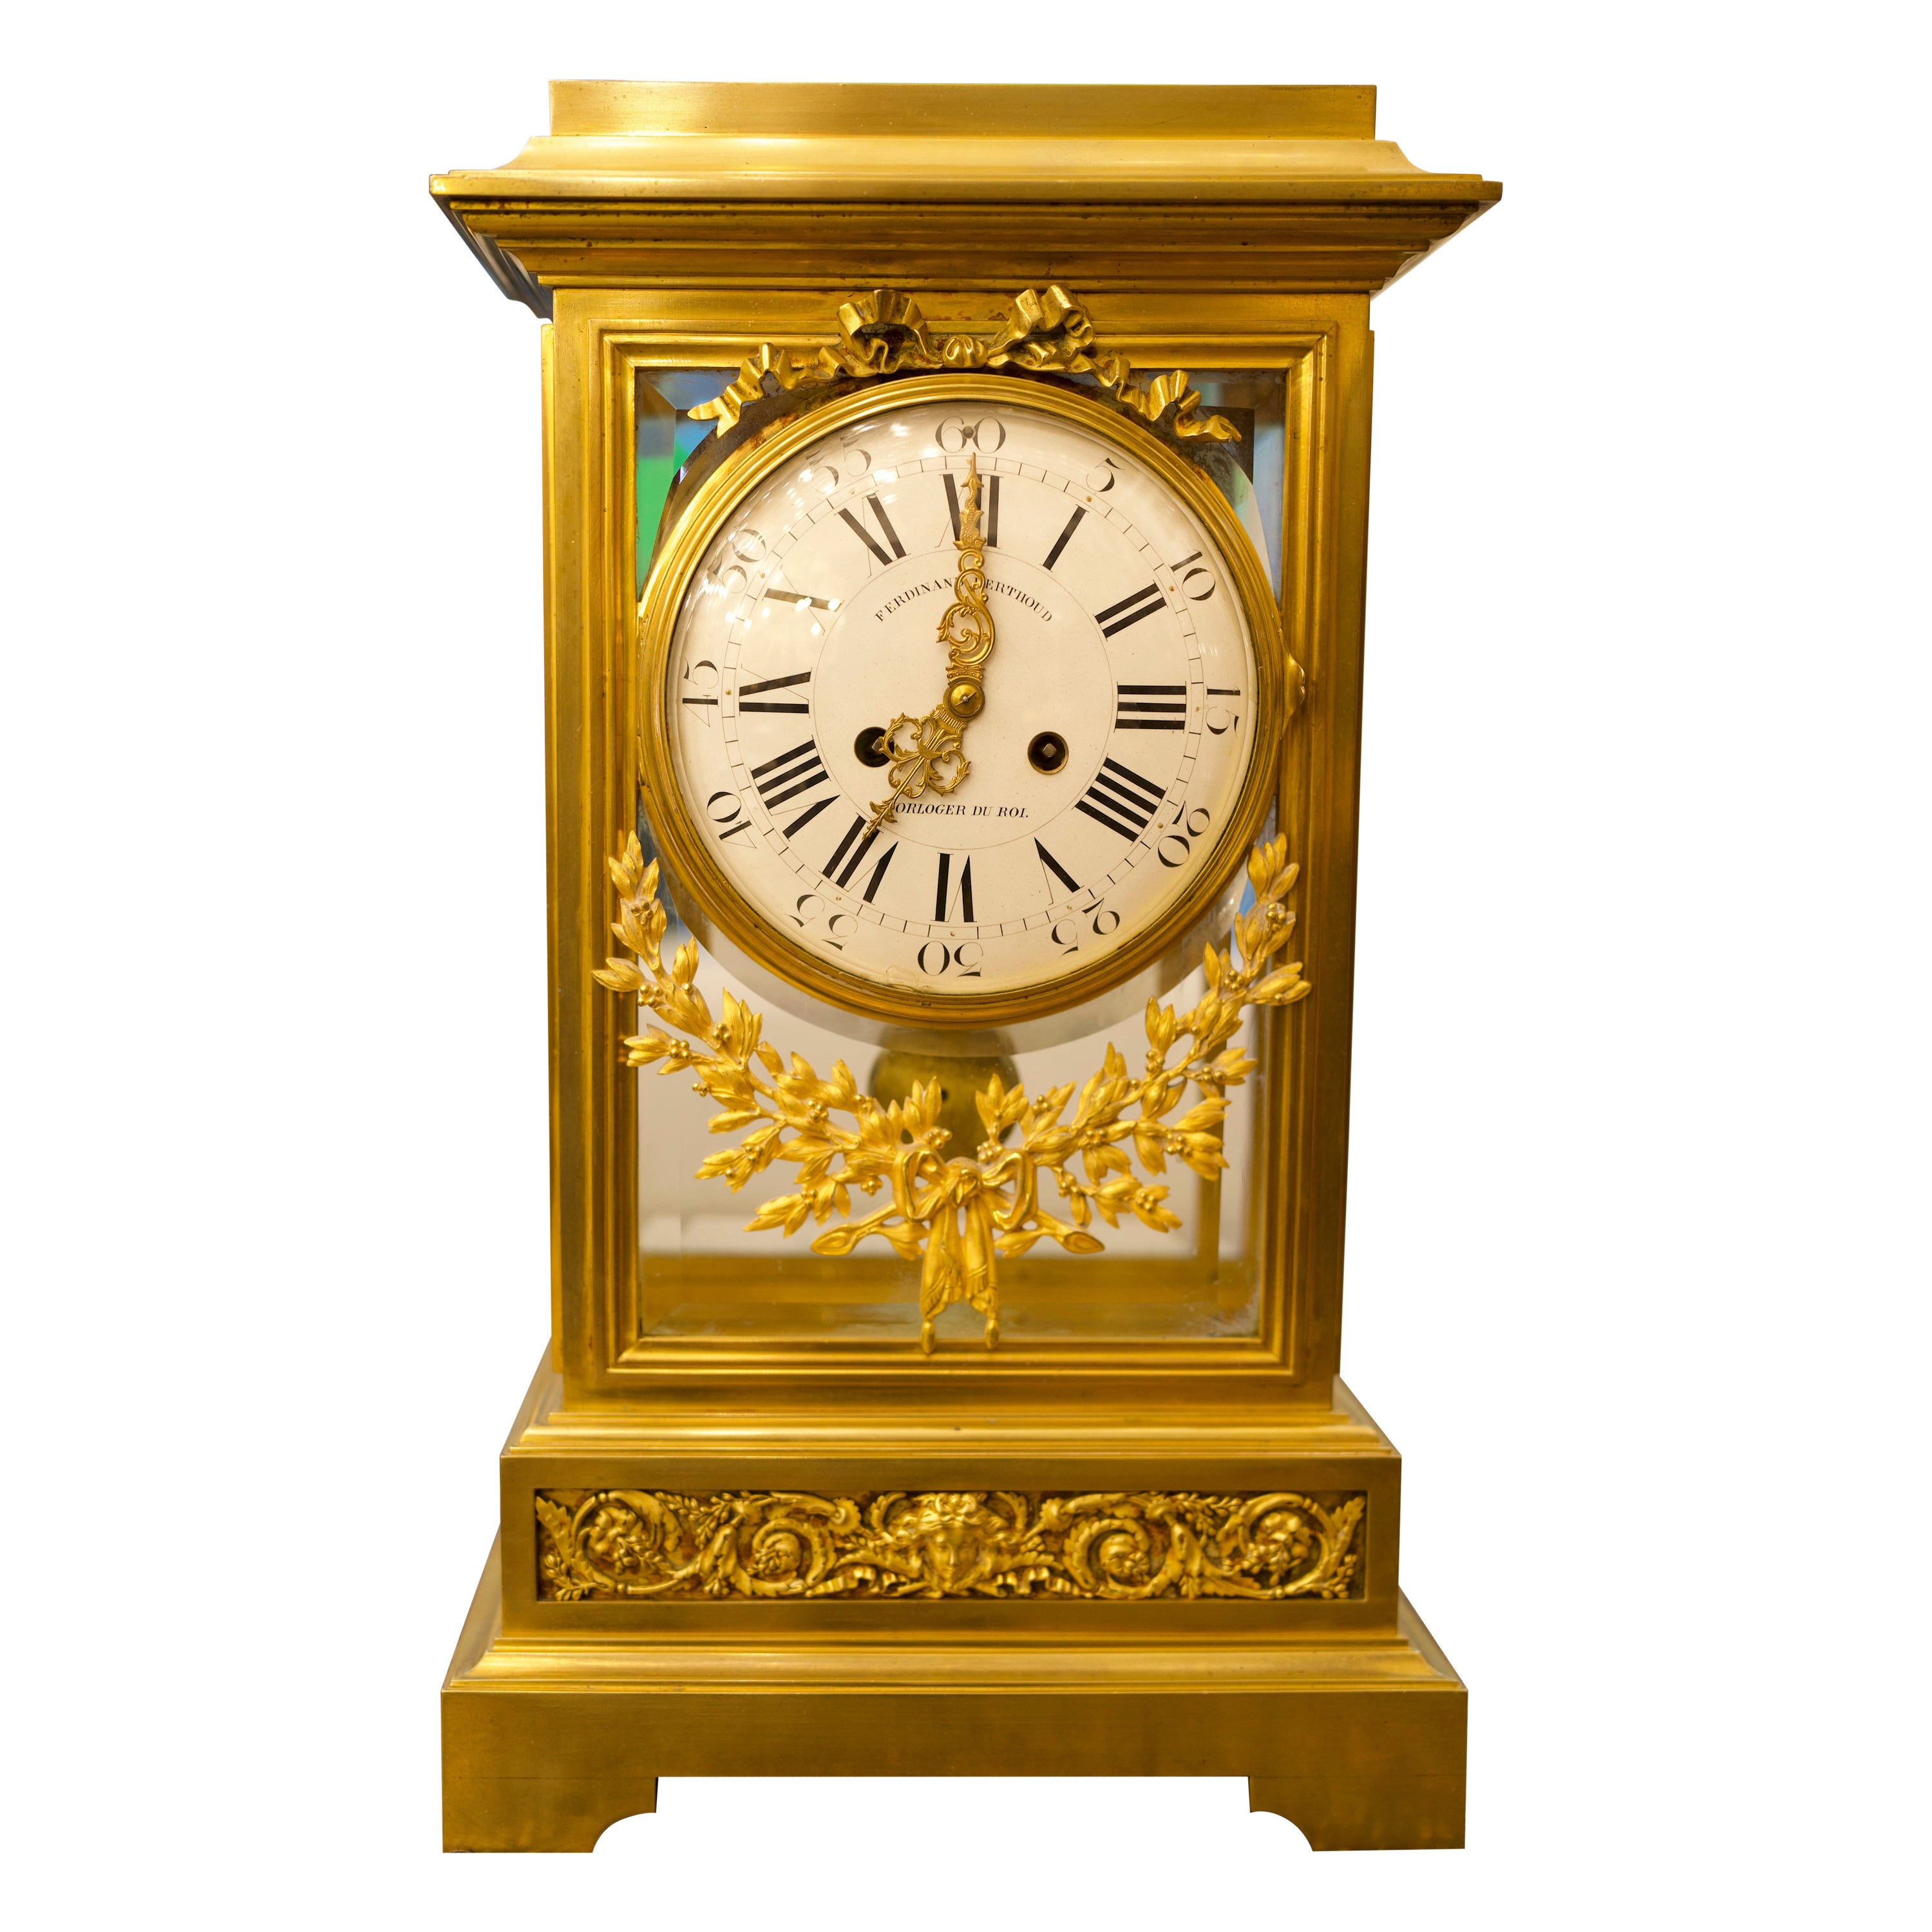 Horloge régulateur en bronze doré de style Louis XVI du 19ème siècle par Ferdinand Berthoud